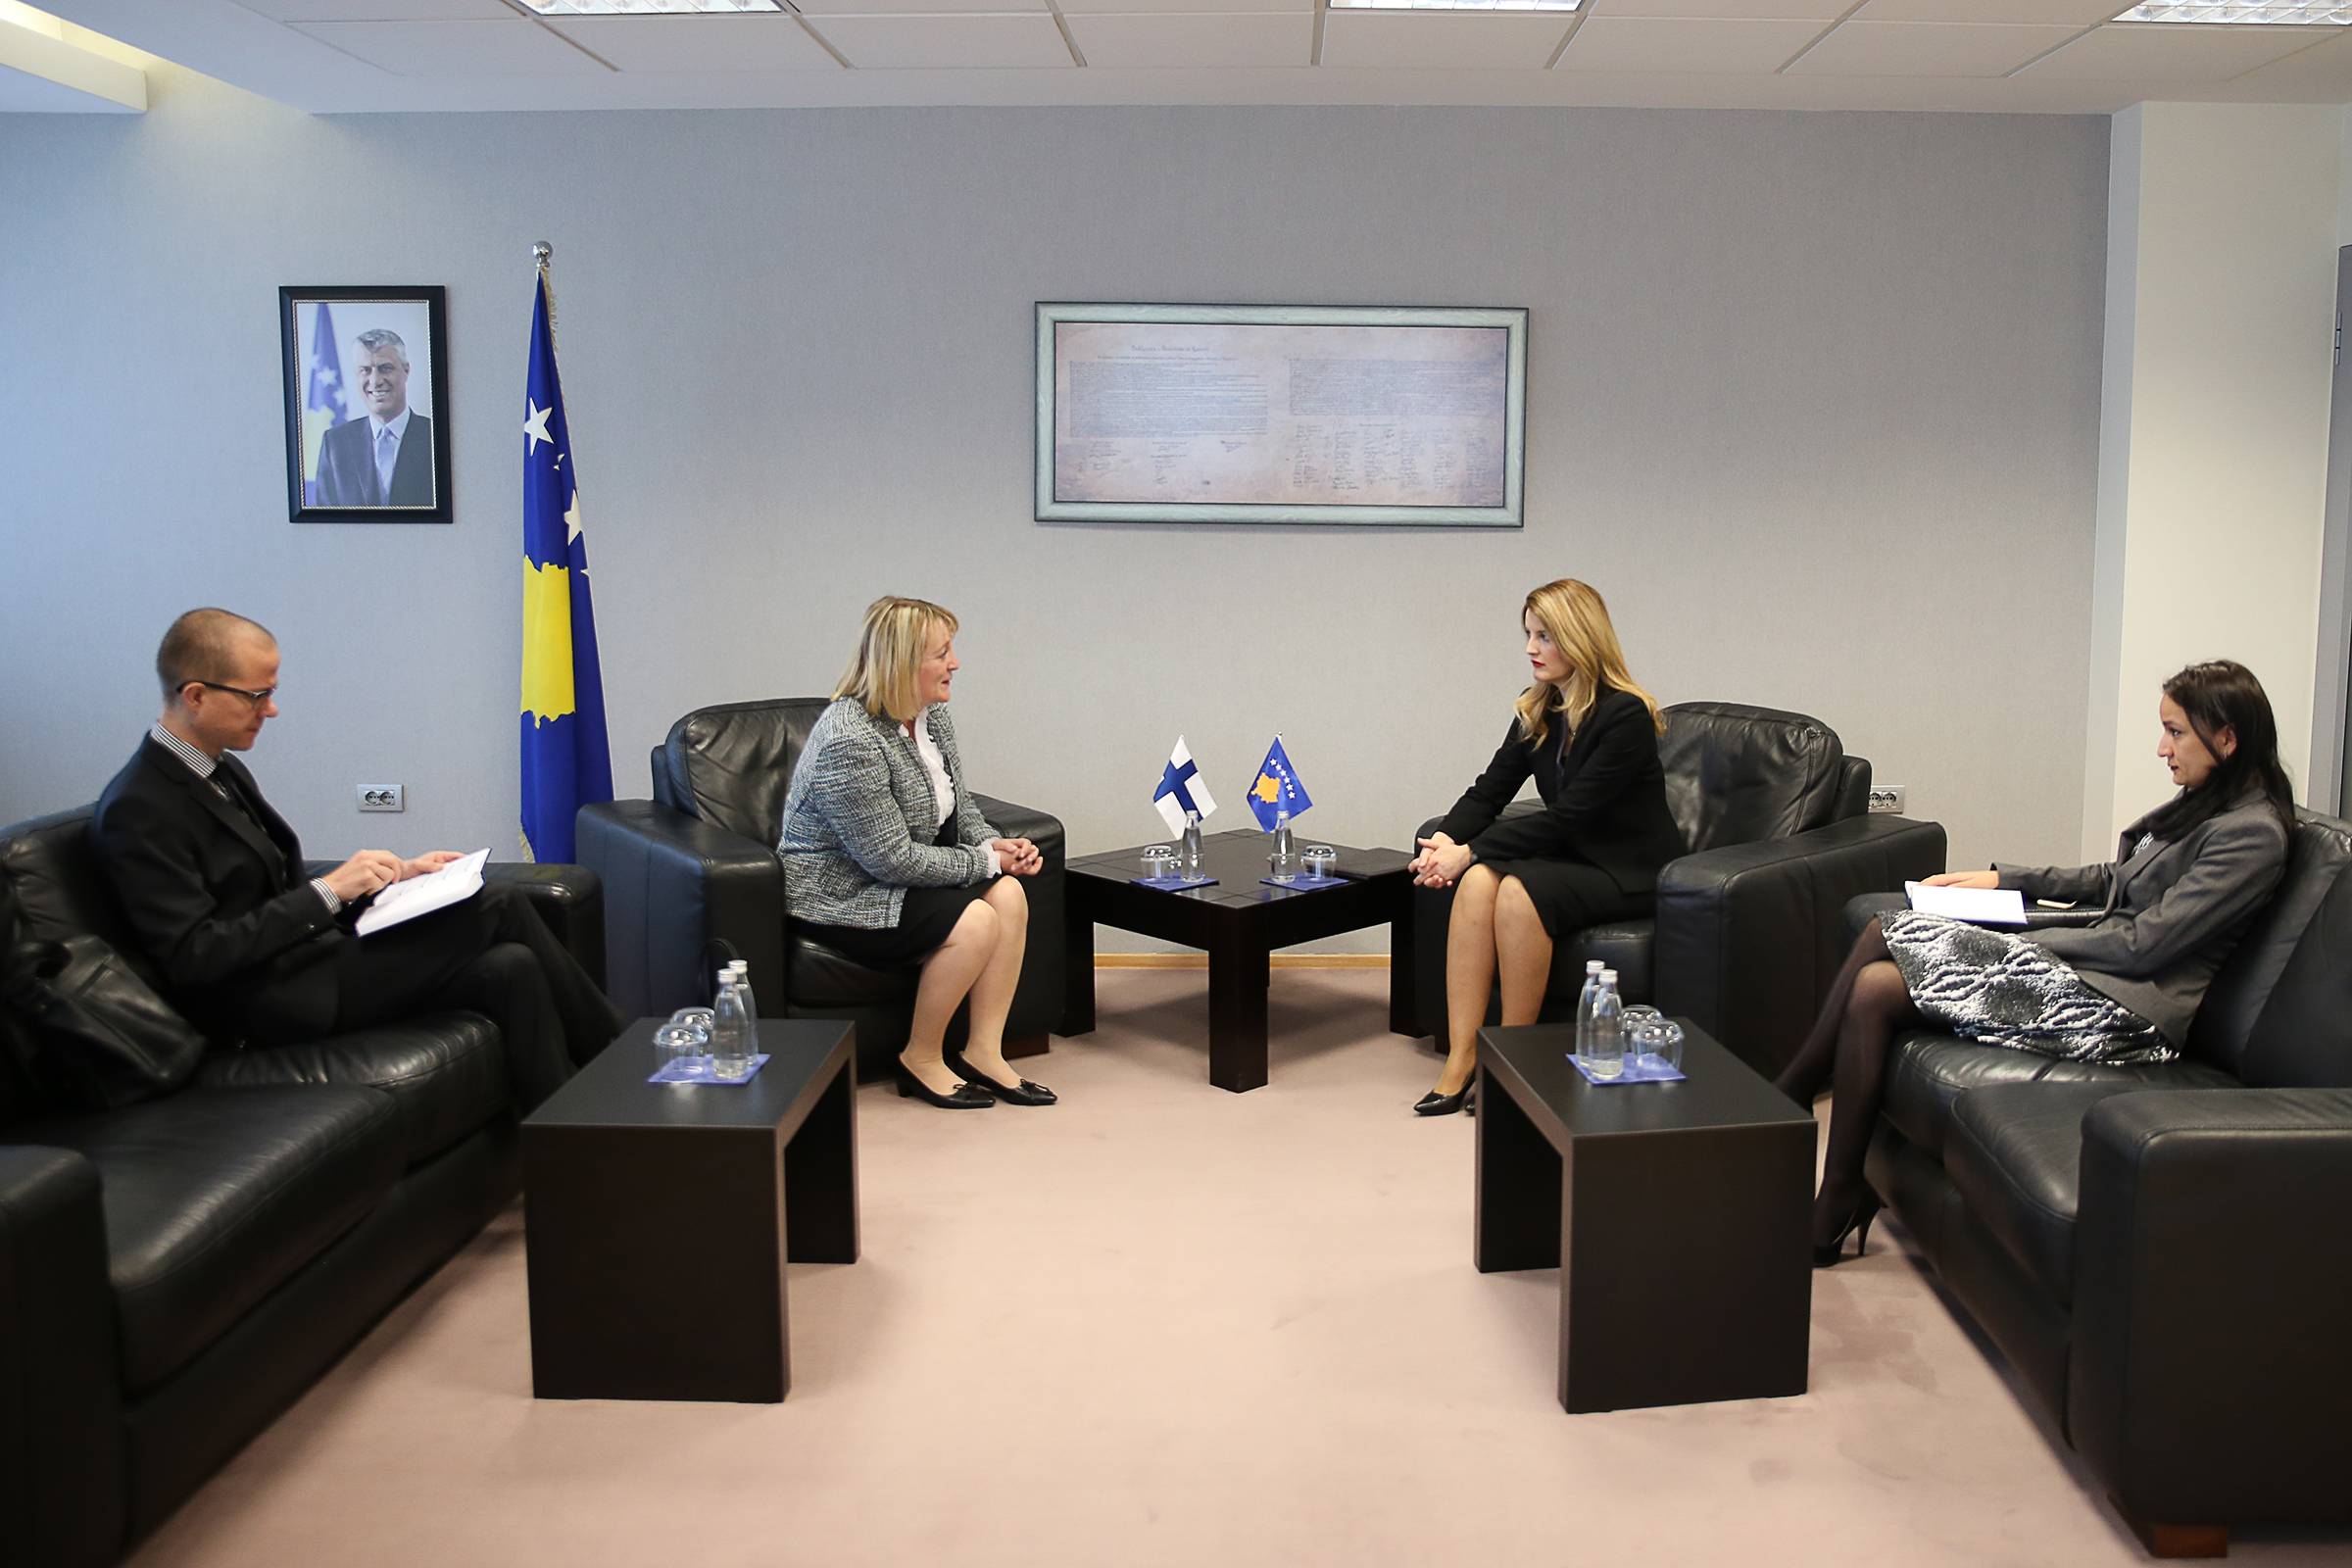 Avancohet bashkëpunimi në drejtësi ndërmjet Kosovës dhe Finlandës 